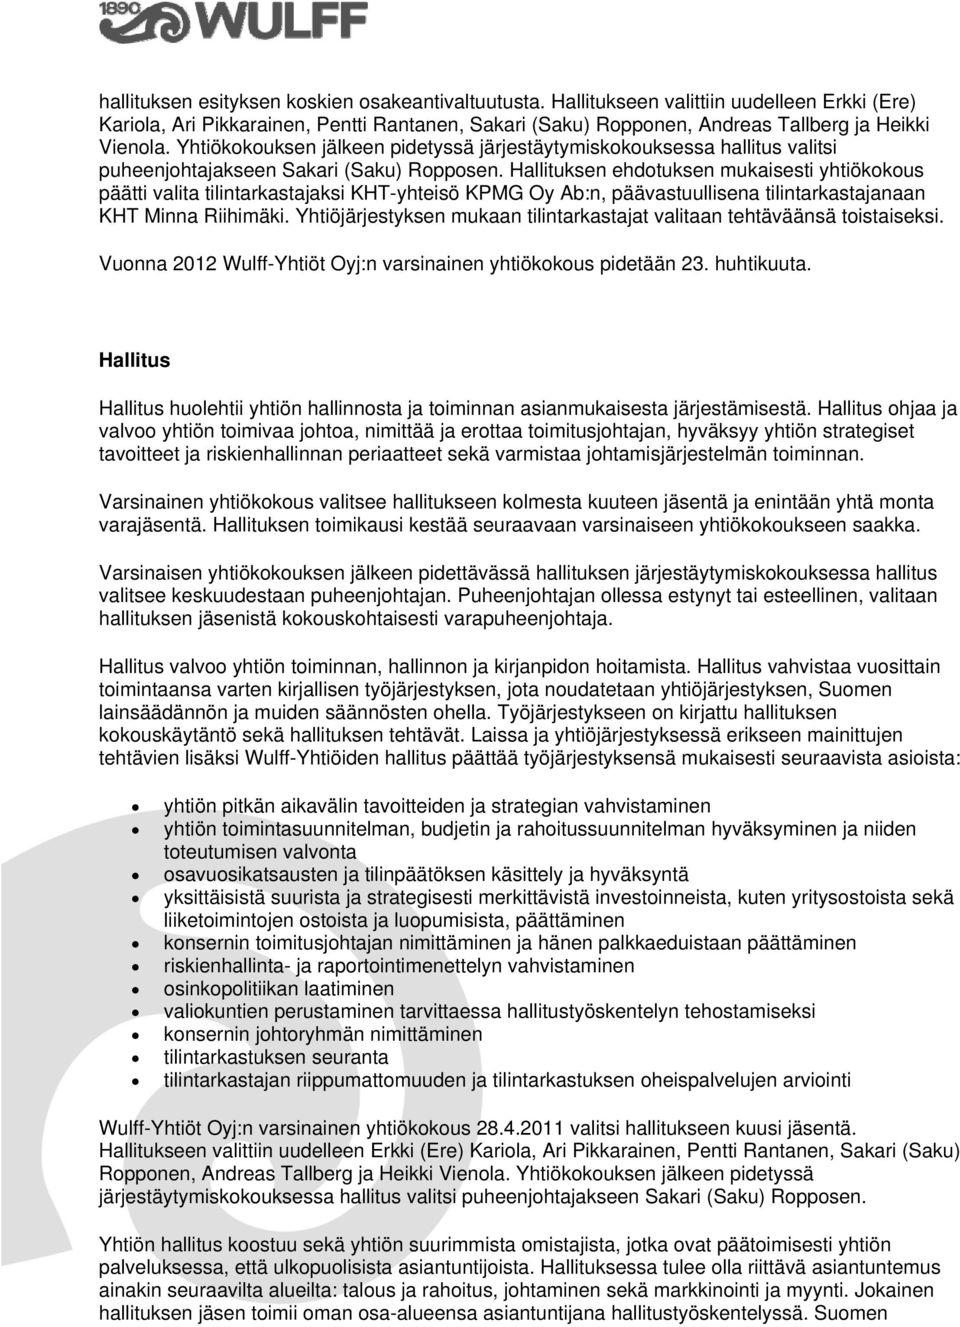 Hallituksen ehdotuksen mukaisesti yhtiökokous päätti valita tilintarkastajaksi KHT-yhteisö KPMG Oy Ab:n, päävastuullisena tilintarkastajanaan KHT Minna Riihimäki.